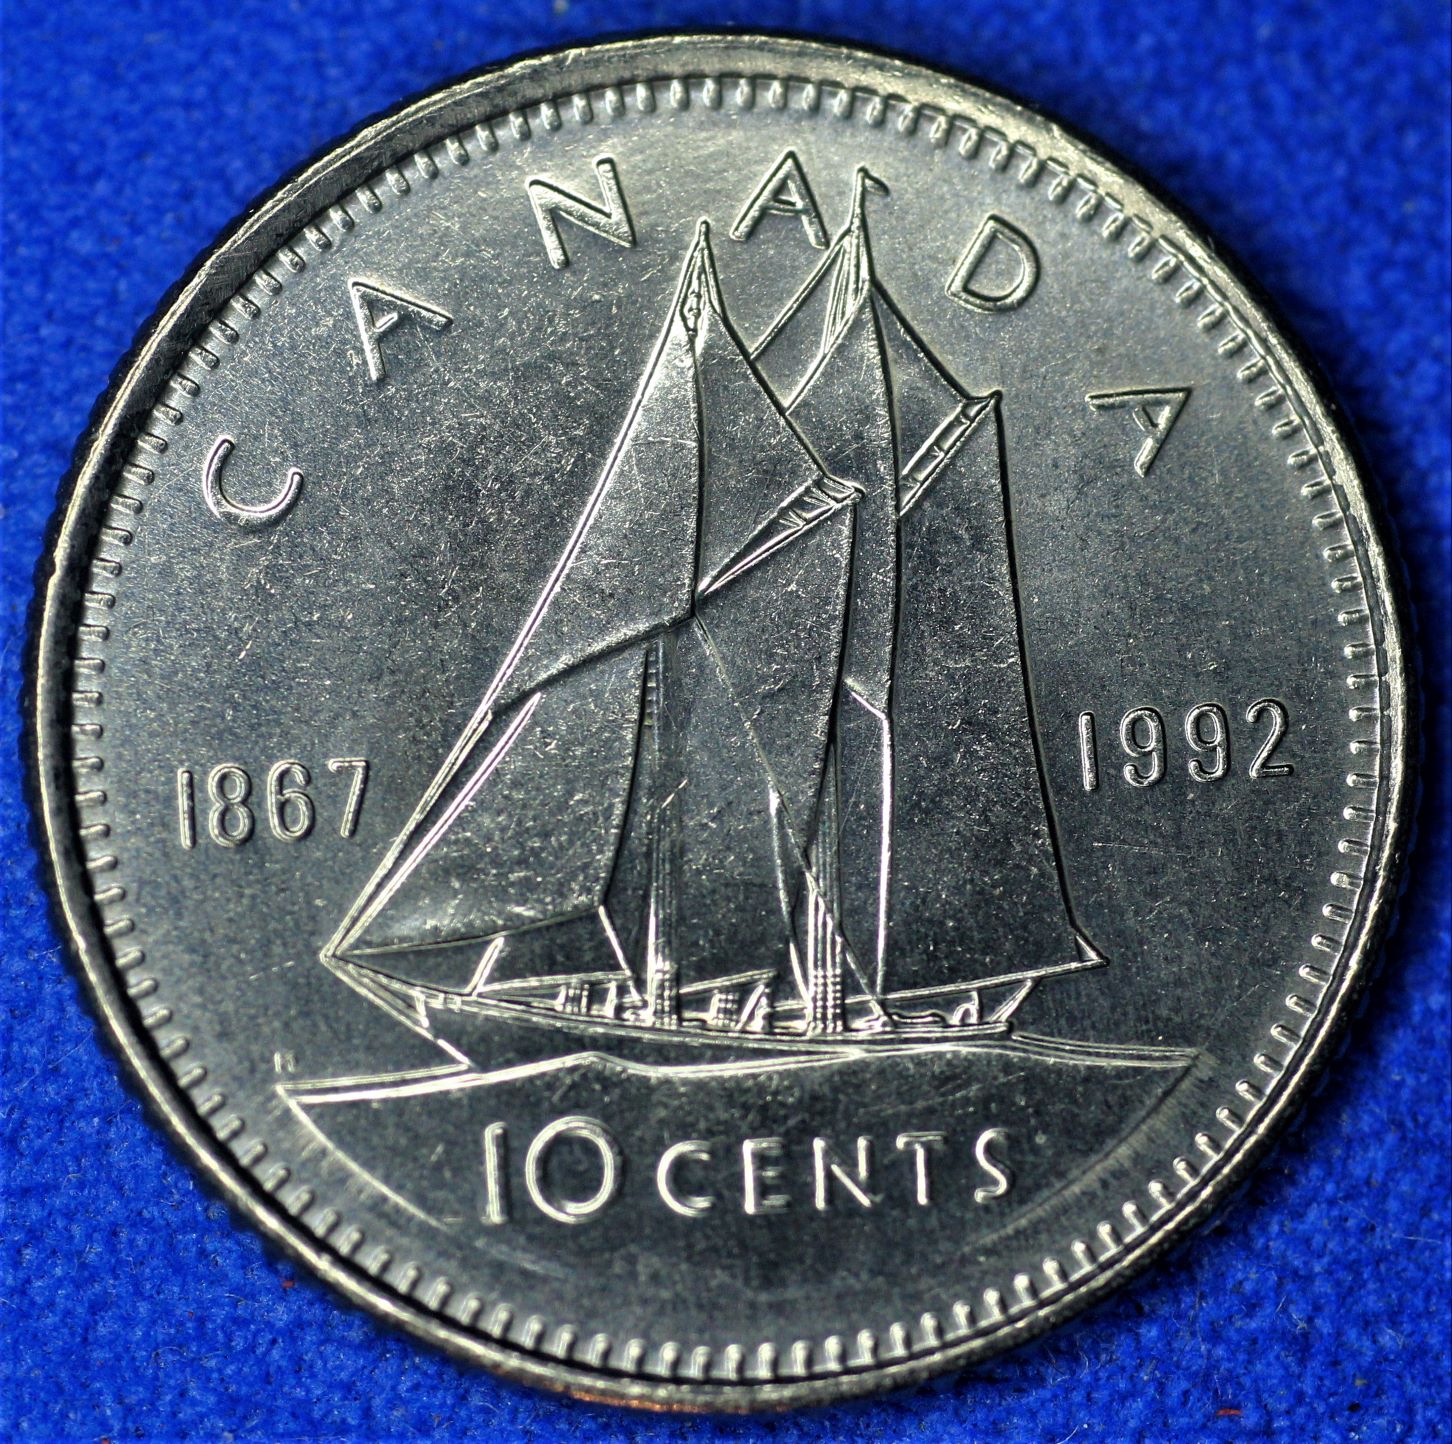 10 ¢ 1992-rev-a.JPG